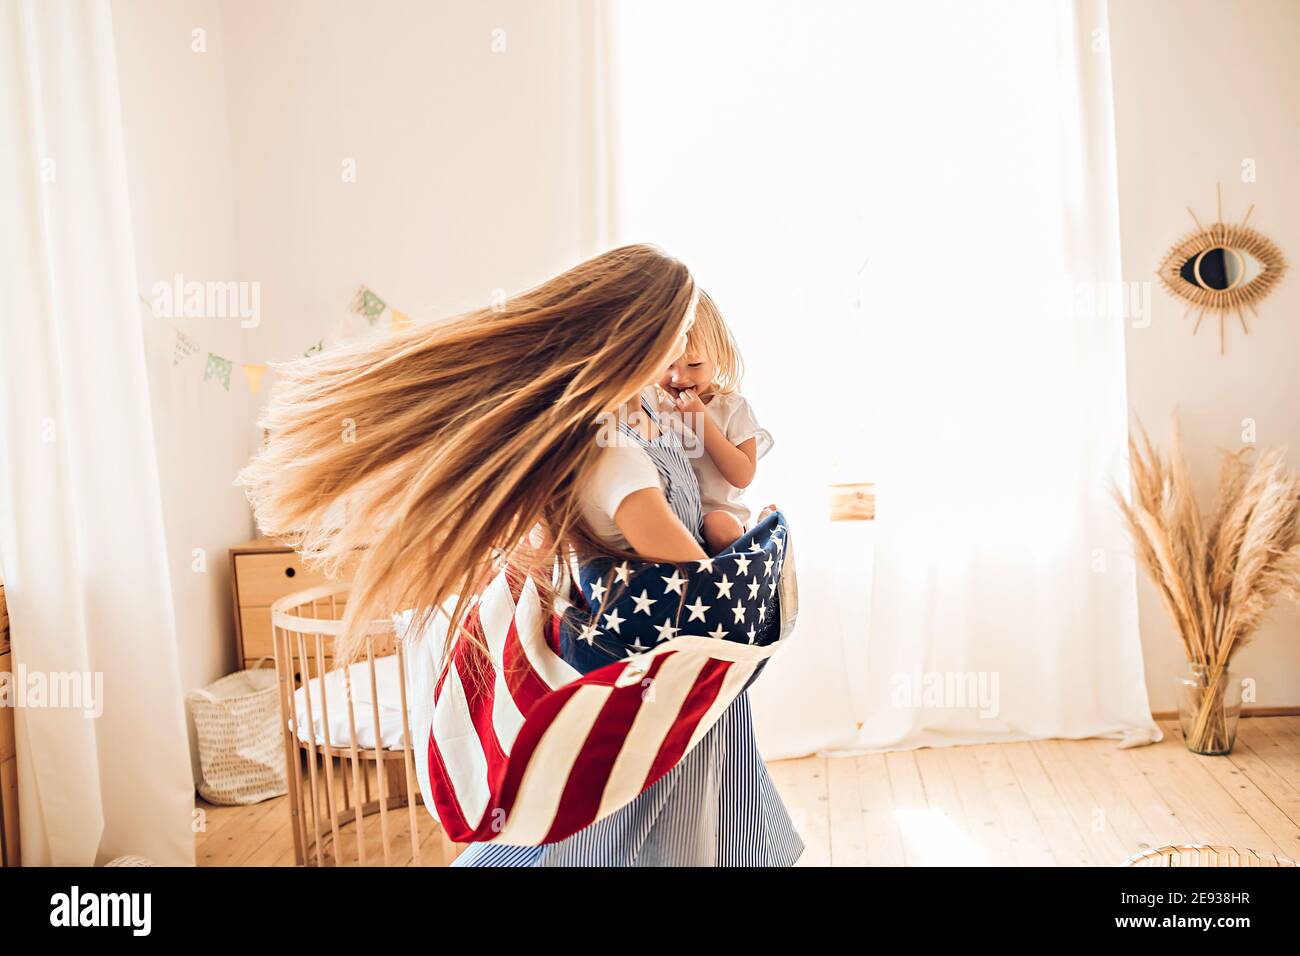 Junge Mutter oder Babysitter mit einem kleinen Mädchen in ihr Die Arme drehen sich in der Mitte des Raumes, um den Juli zu feiern 4th Unabhängigkeitstag Stockfoto